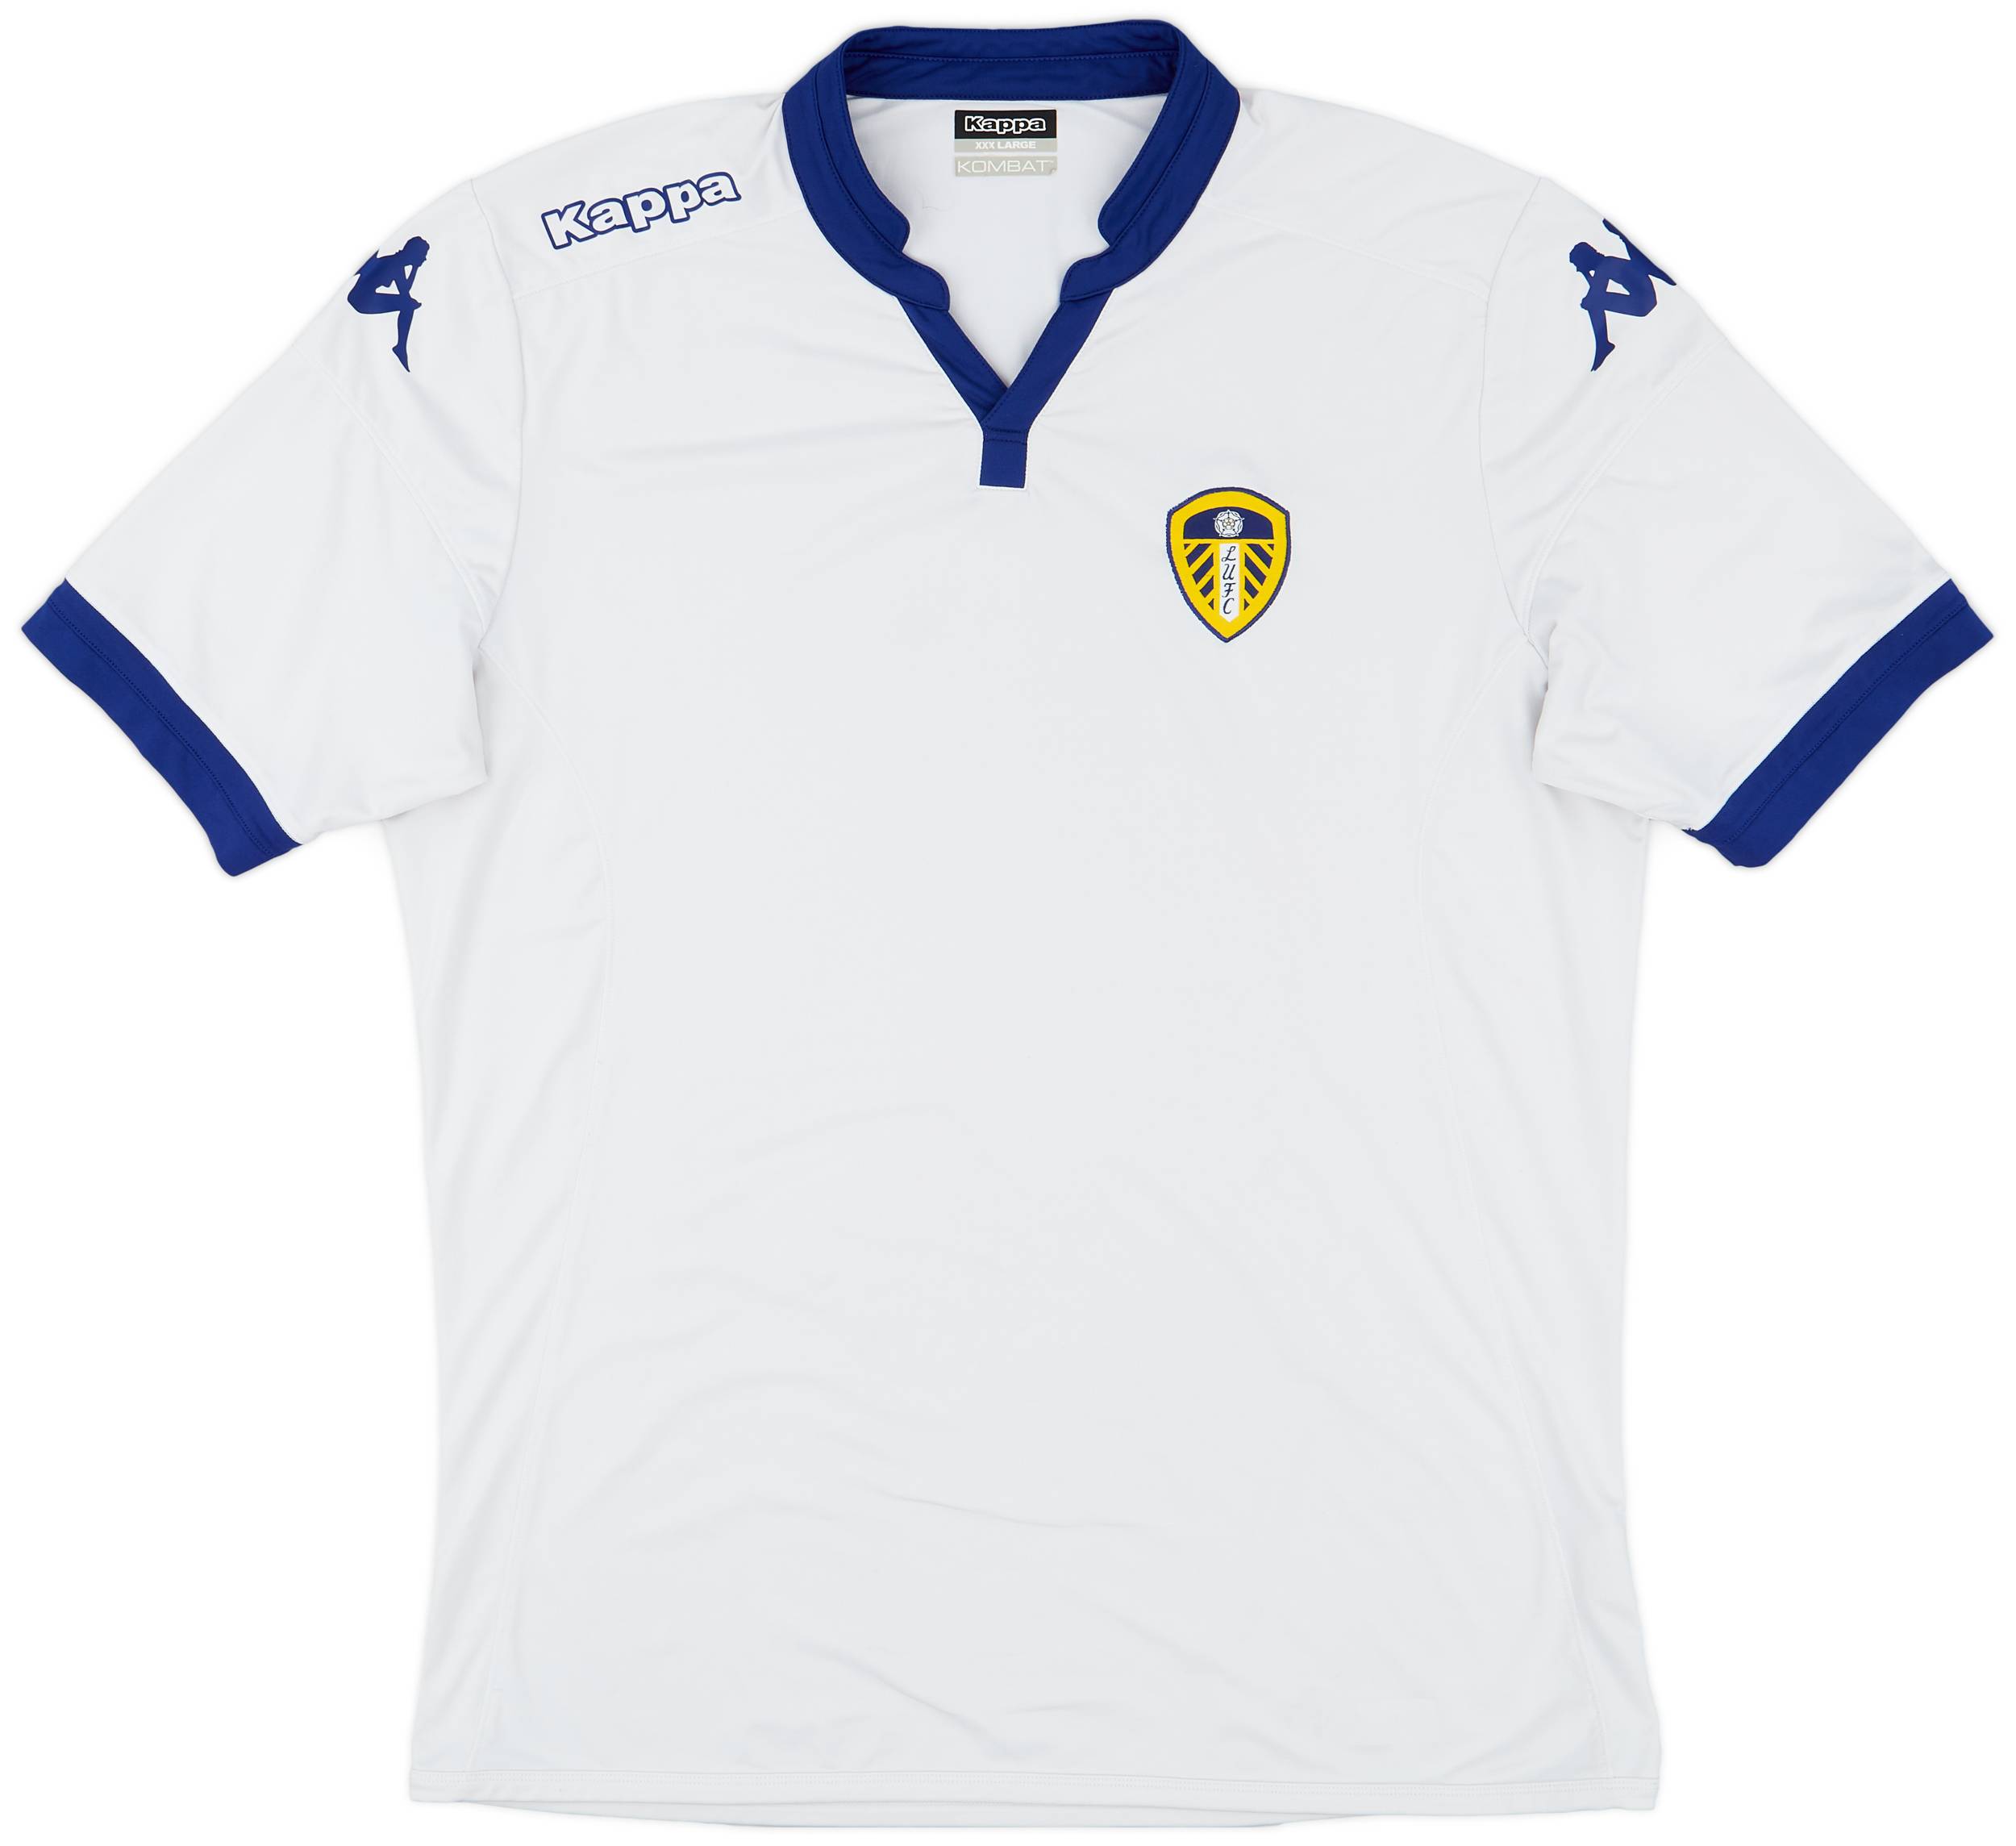 2015-16 Leeds United Home Shirt - 5/10 - (XXL)